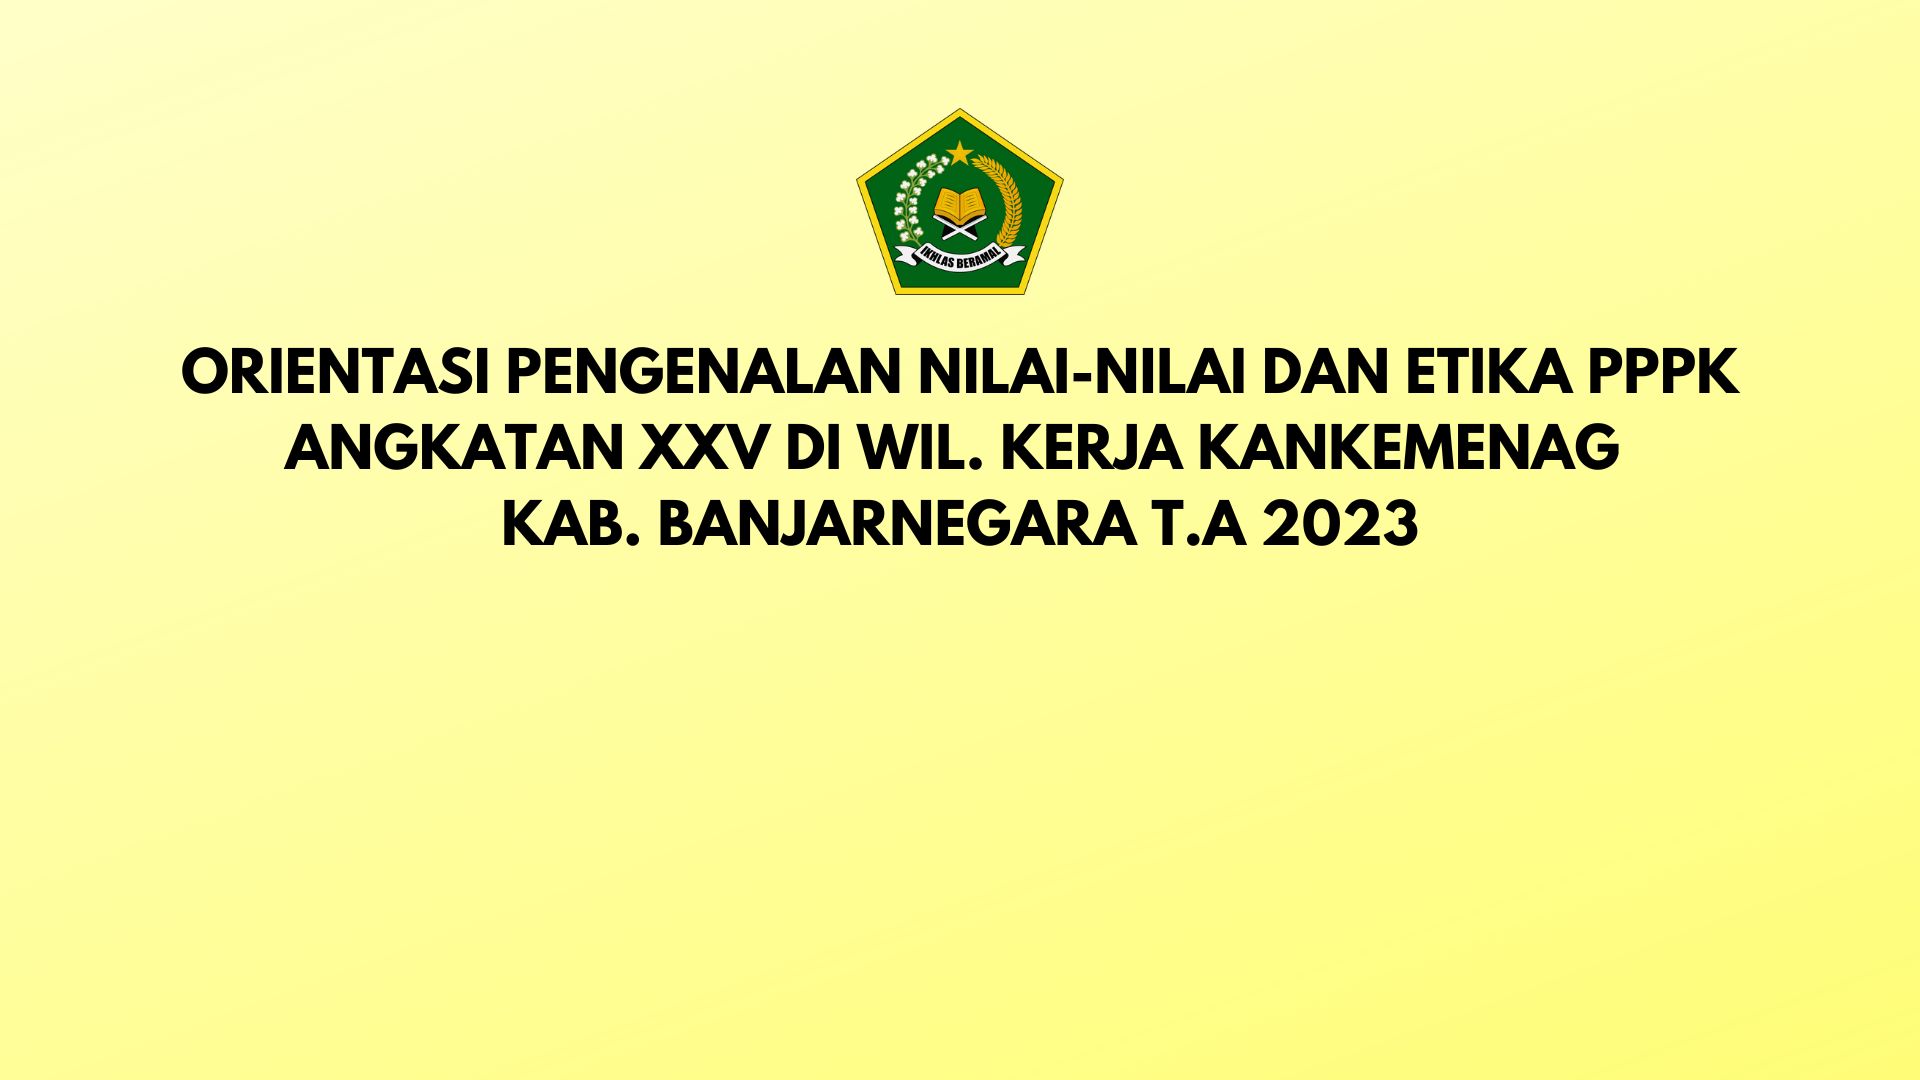 2023 Orientasi Pengenalan Nilai dan Etika pada Instansi Pemerintah Bagi Pegawai Pemerintah dengan Perjanjian Kerja (PPPK) Angkatan XXV (Kab. Banjarnegara)